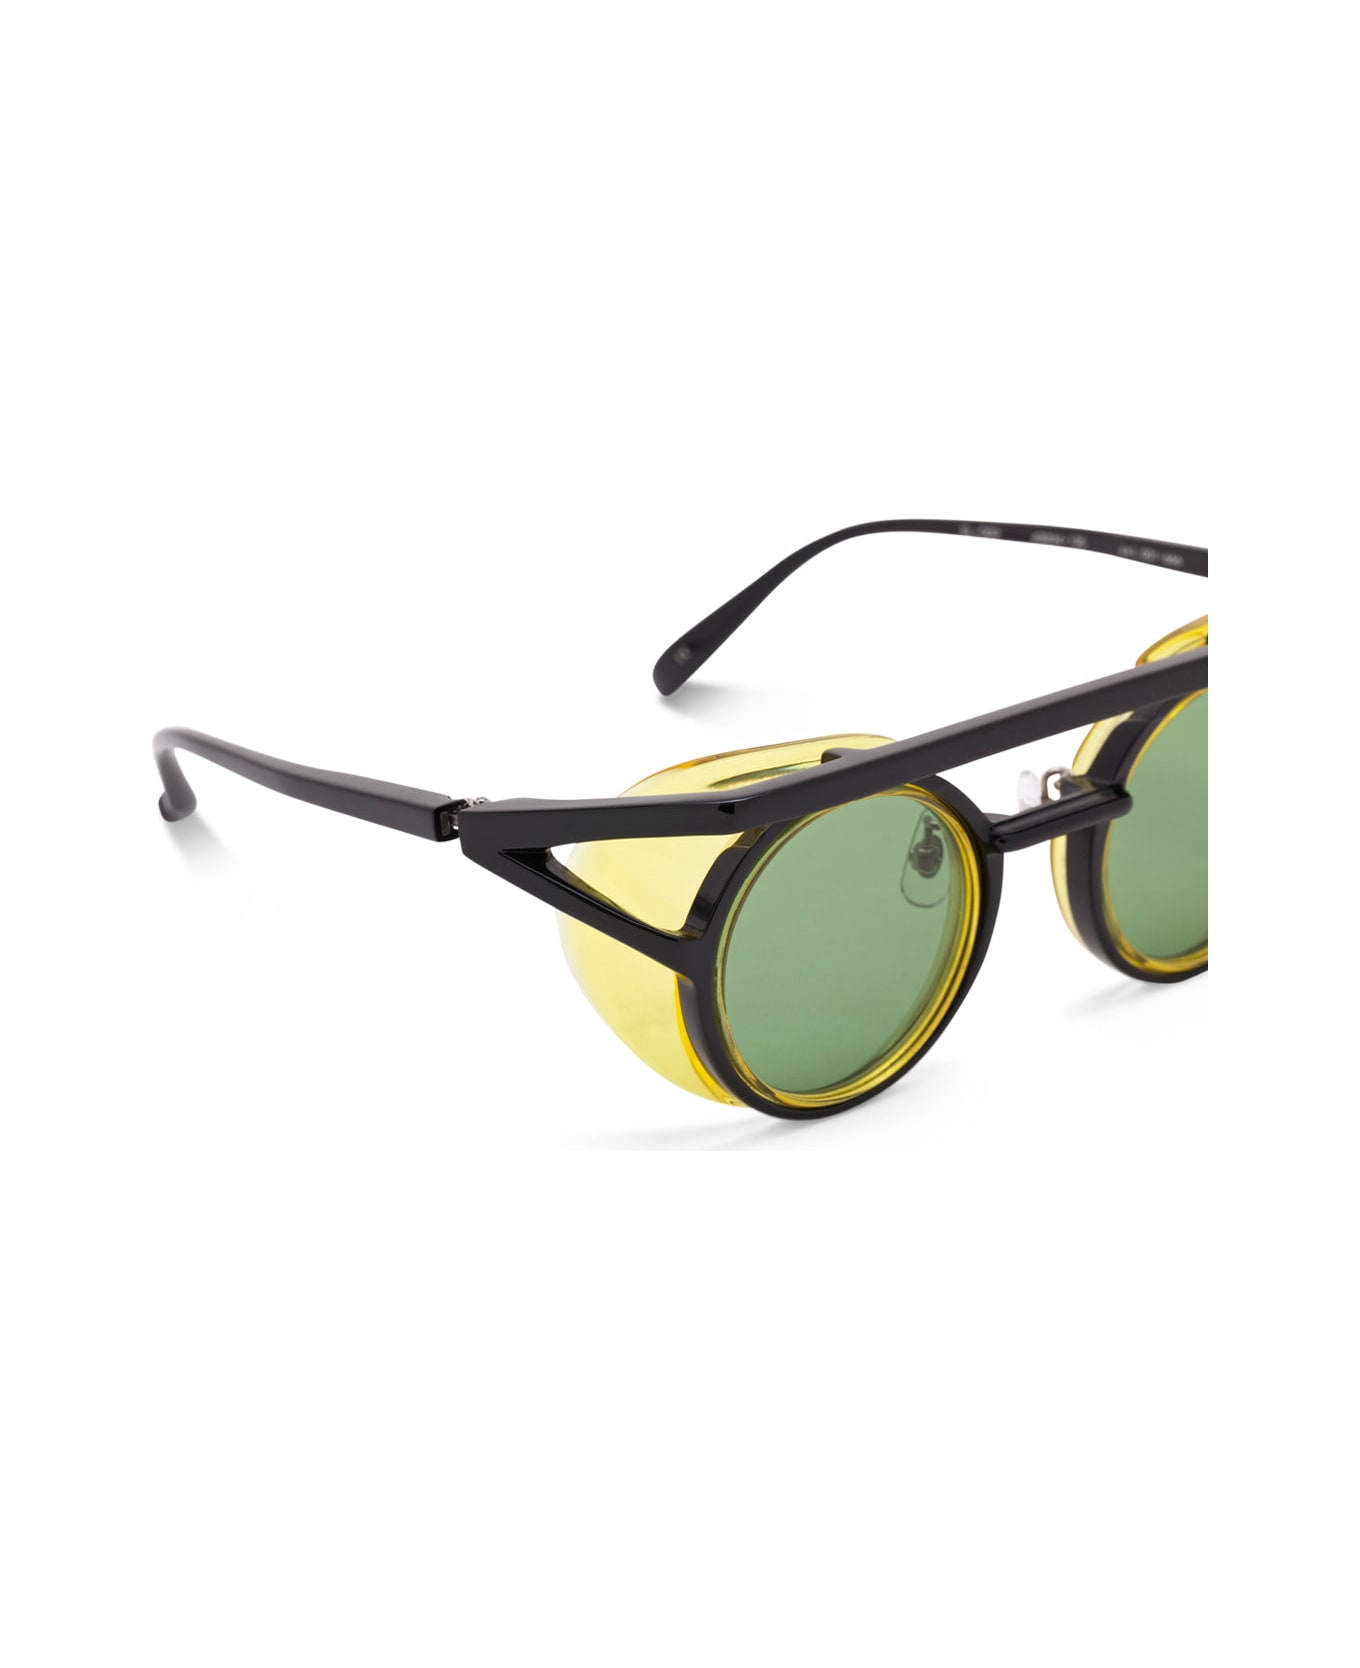 FACTORY900 El 002-001-666 Sunglasses - transparent black/yellow